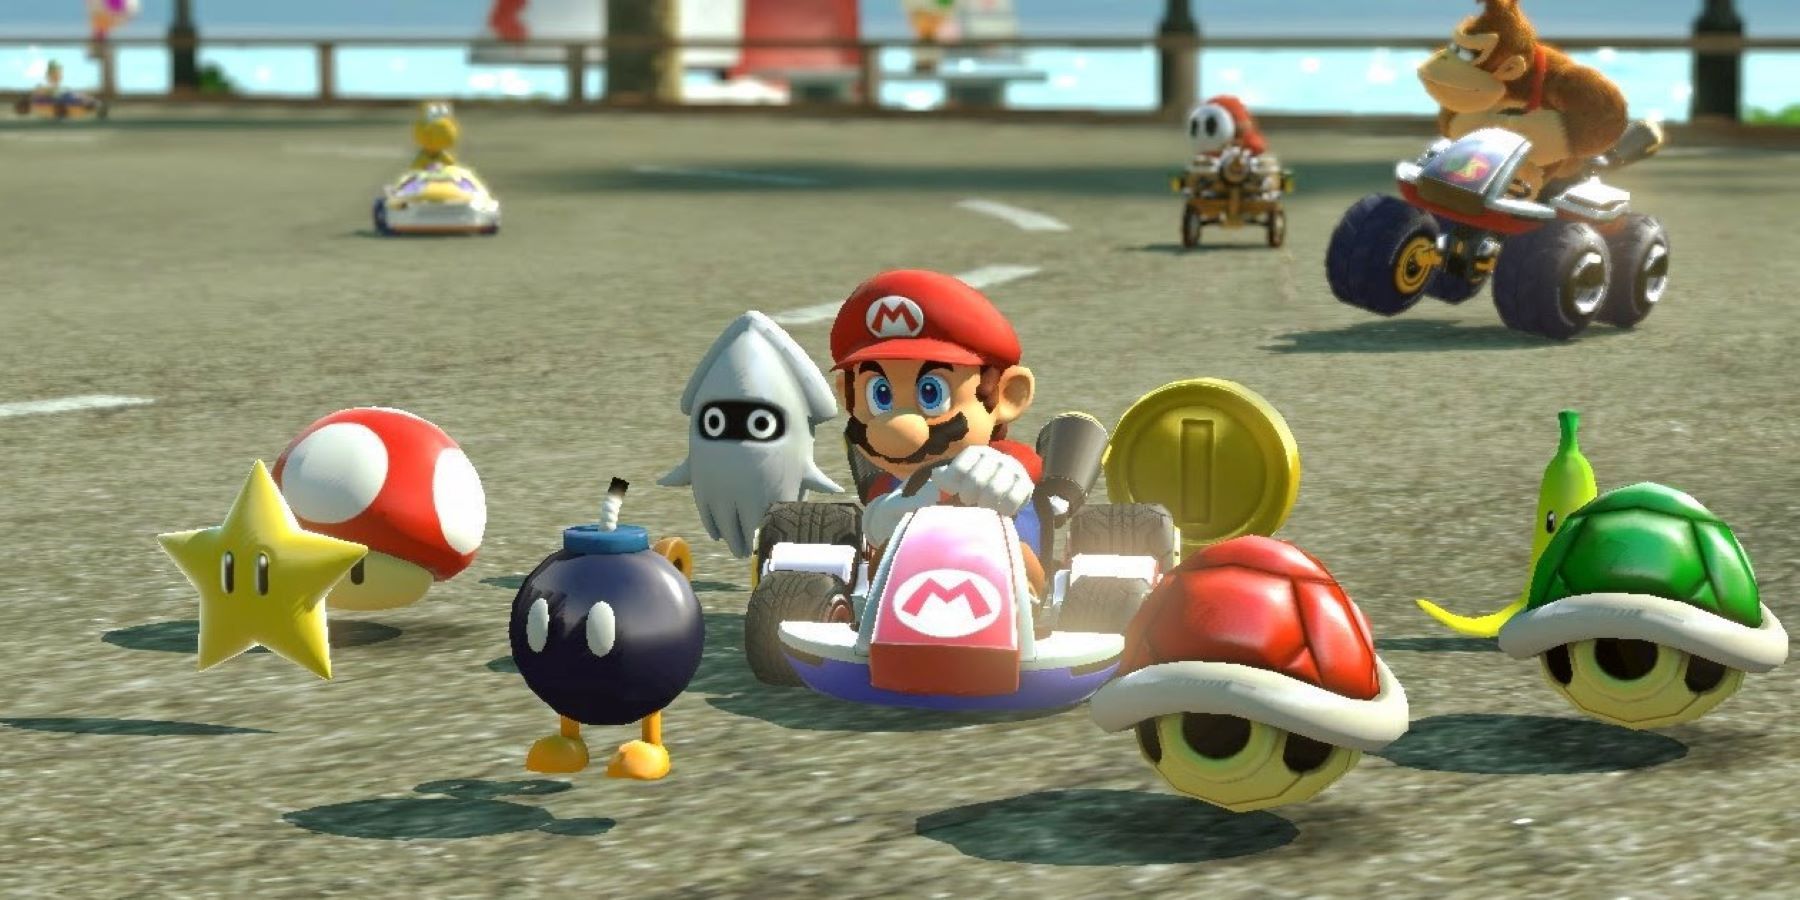 Марио едет на картинге в Mario Kart 8 и использует предмет Crazy Eight на фоне Donkey Kong, Shy Guy и Koopa Troopa.